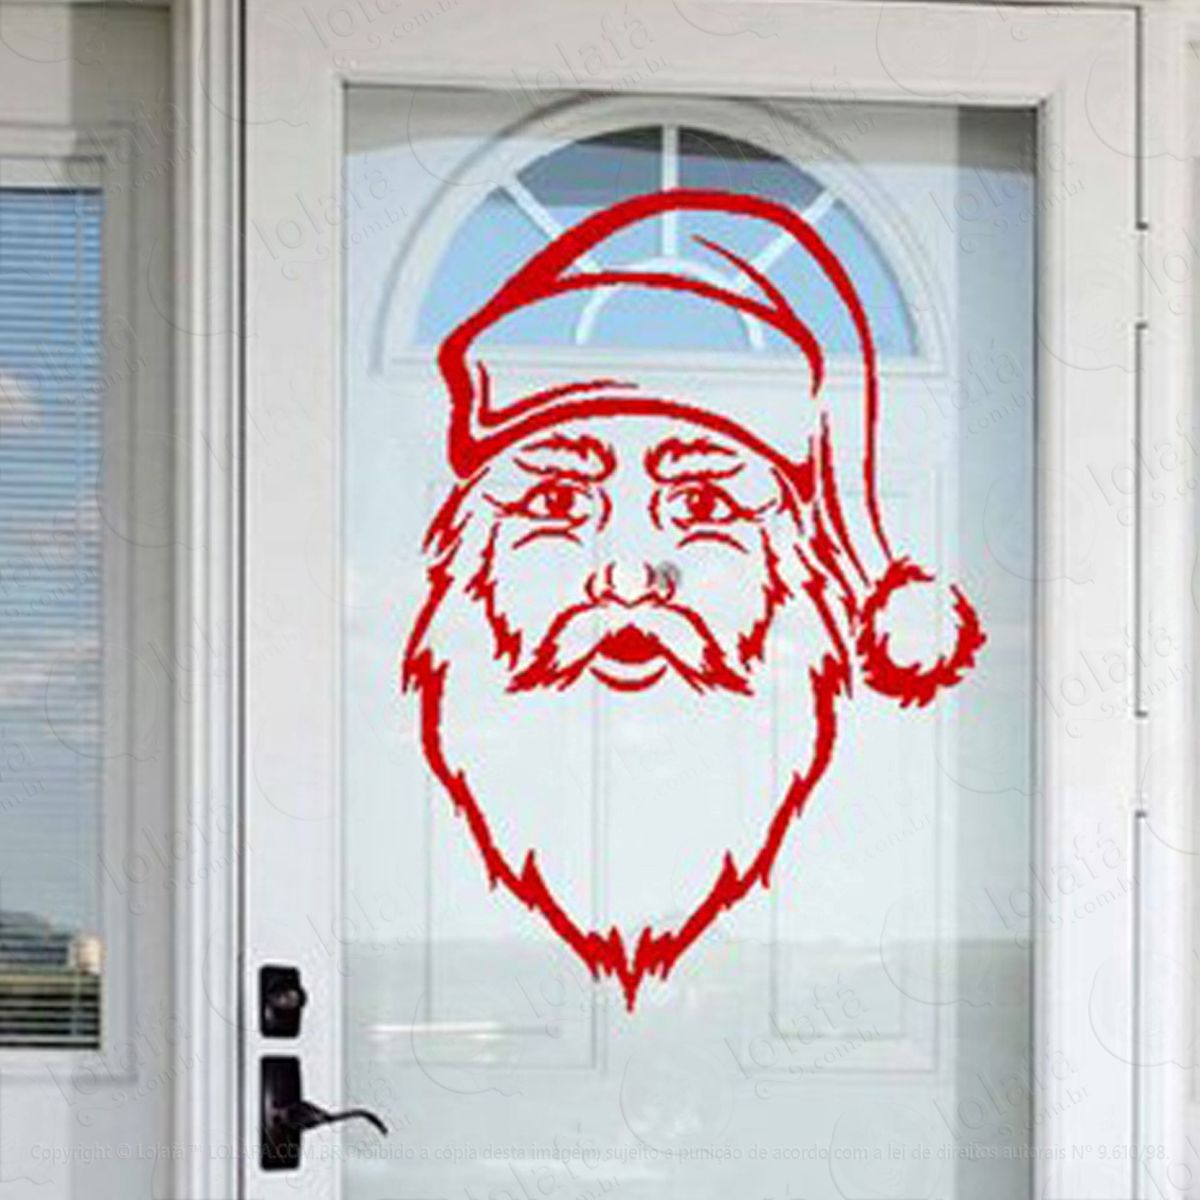 noel adesivo de natal para vitrine, parede, porta de vidro - decoração natalina mod:185